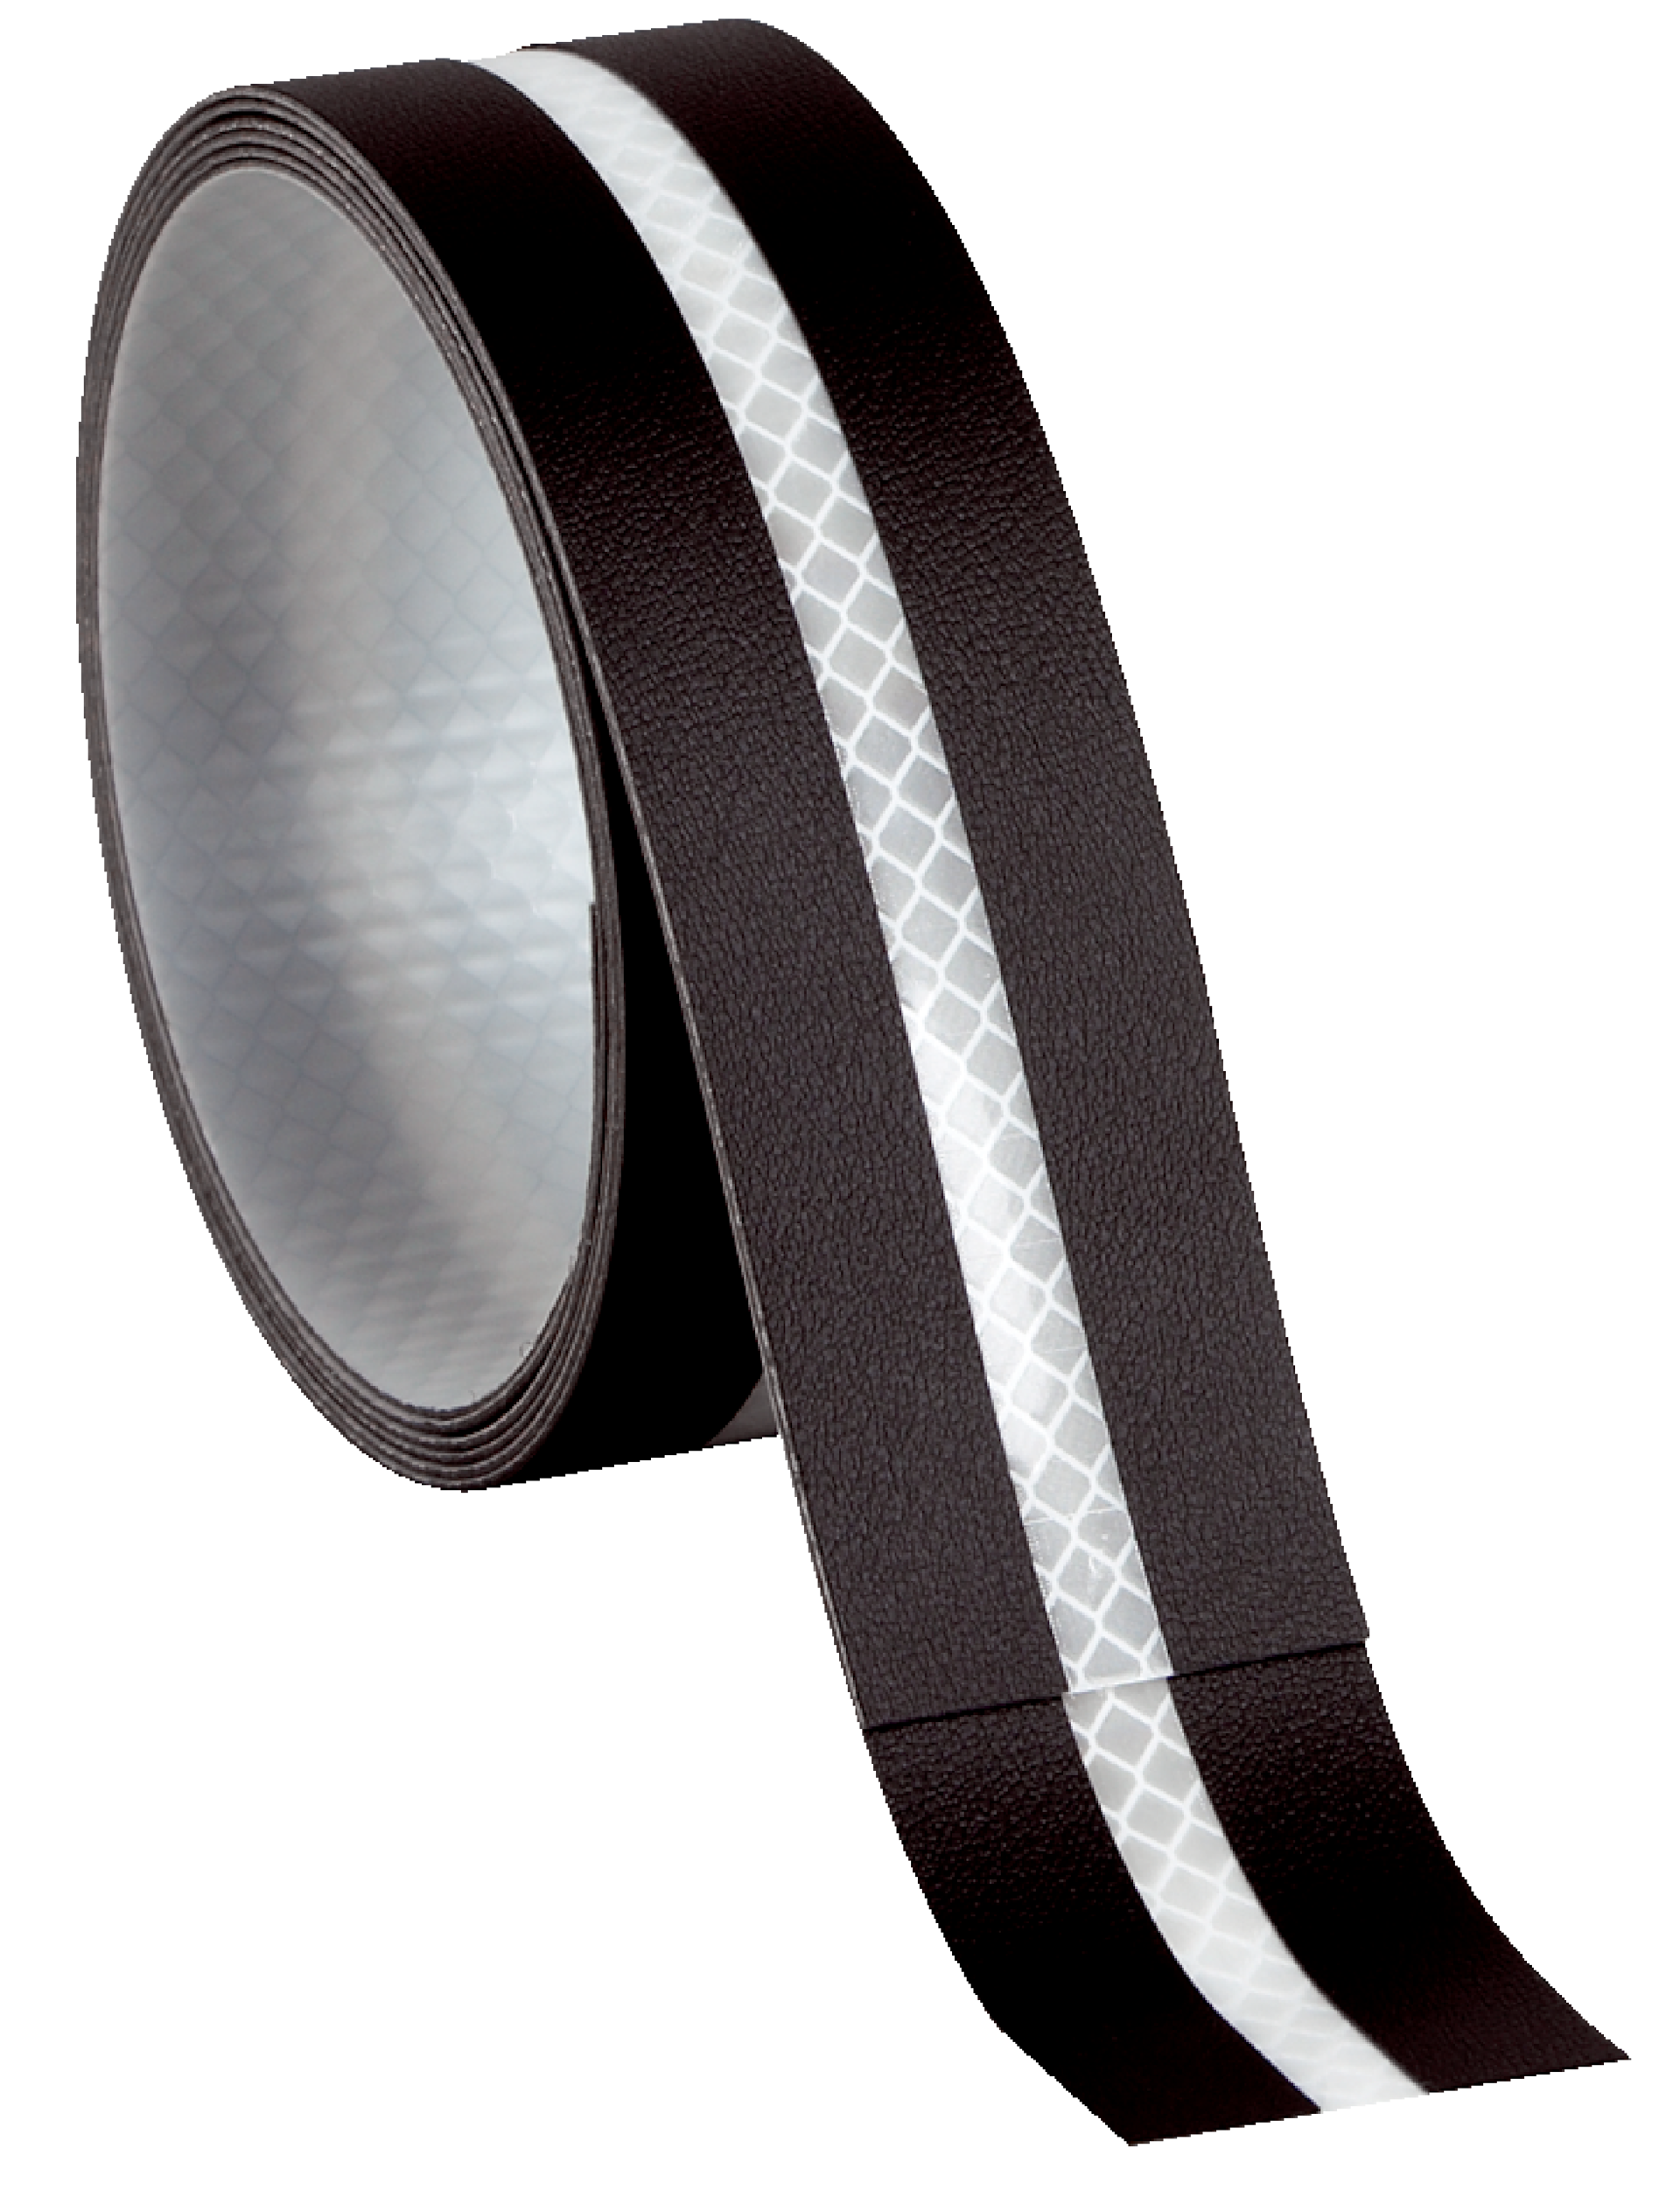 Reflector tape 3 x 1.5 m - Reflectors and optics